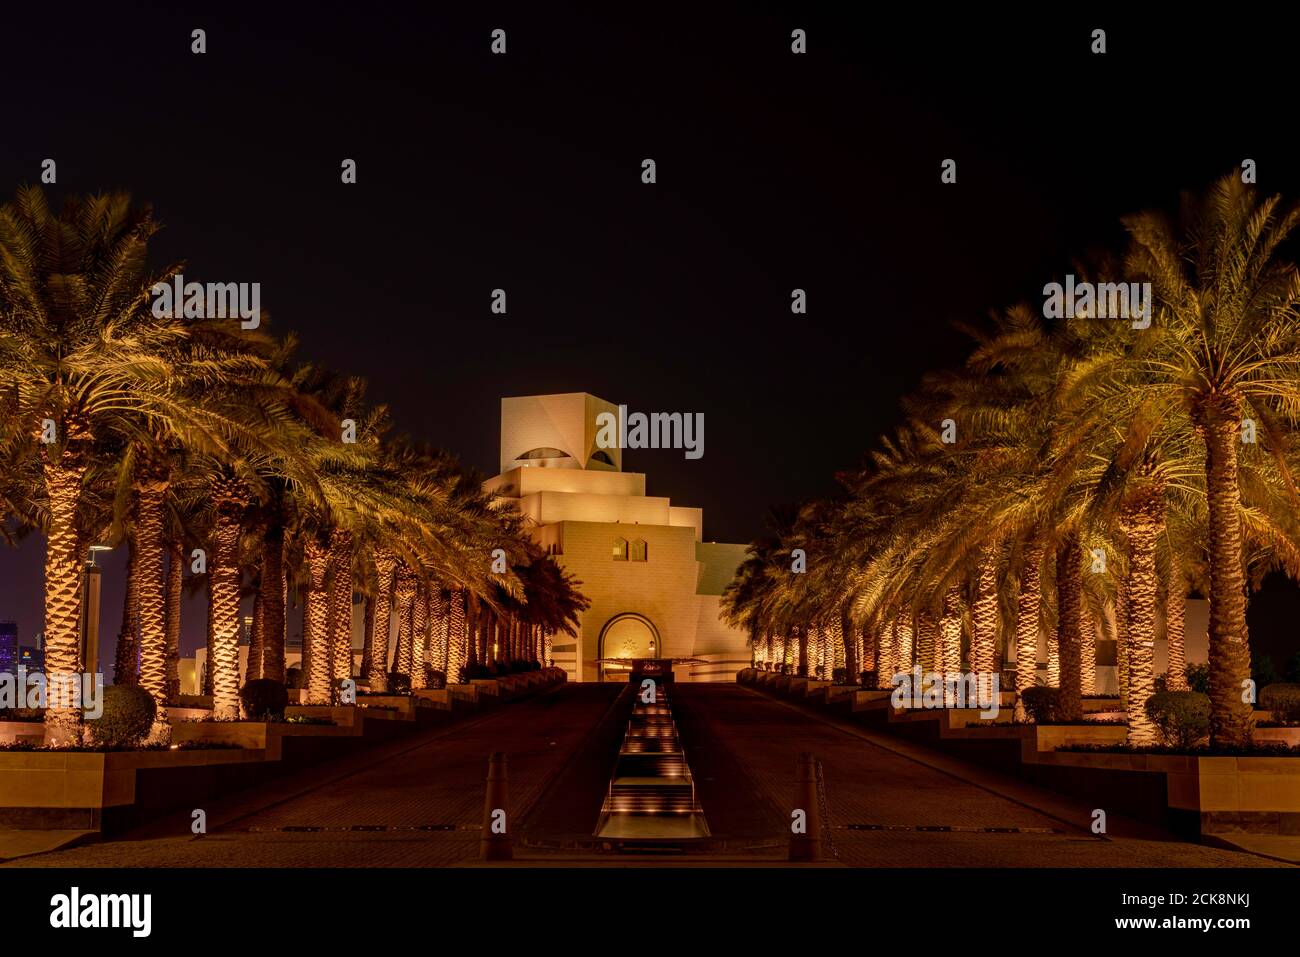 Doha, Qatar - 26 de agosto de 2020: Vista nocturna del punto de referencia de la ciudad de Qatar, Museo de Arte Islámico (MIA), que muestra la arquitectura y construcción árabes modernas Foto de stock